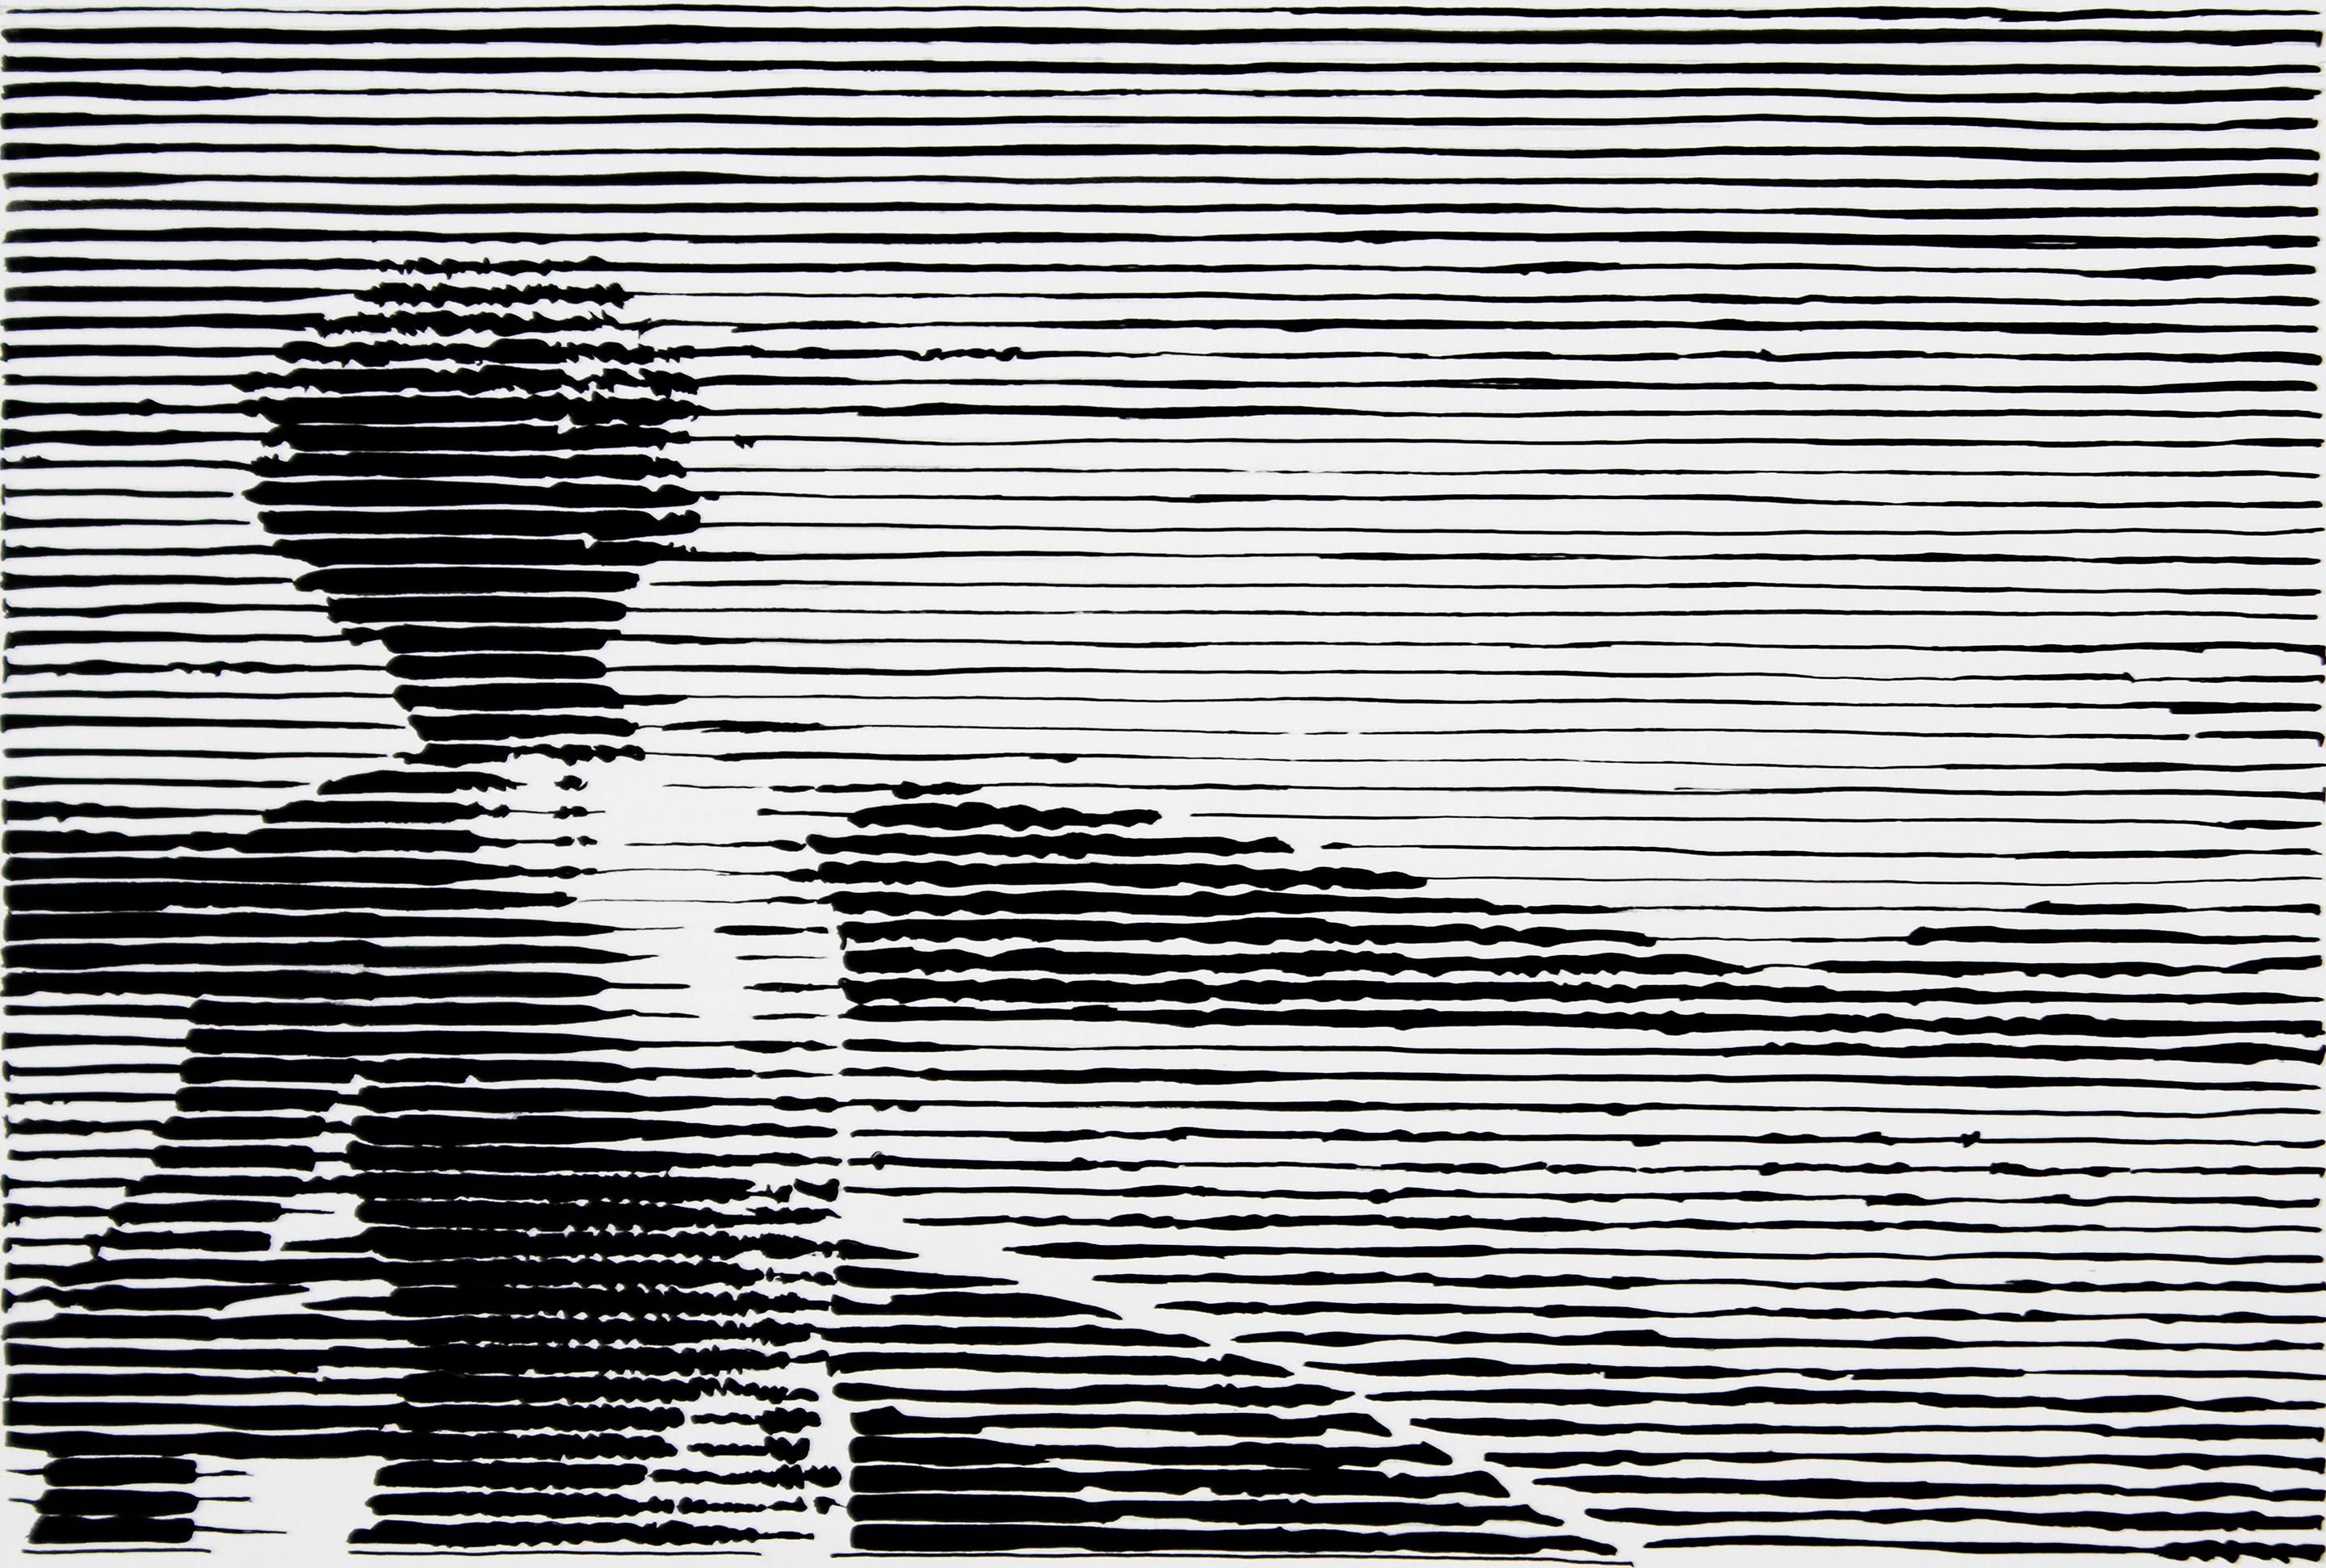 Charles Buckley Portrait – Born on a Boat, Schwarz-Weiß-Arbeit auf Papier, Frau auf See, Streifen